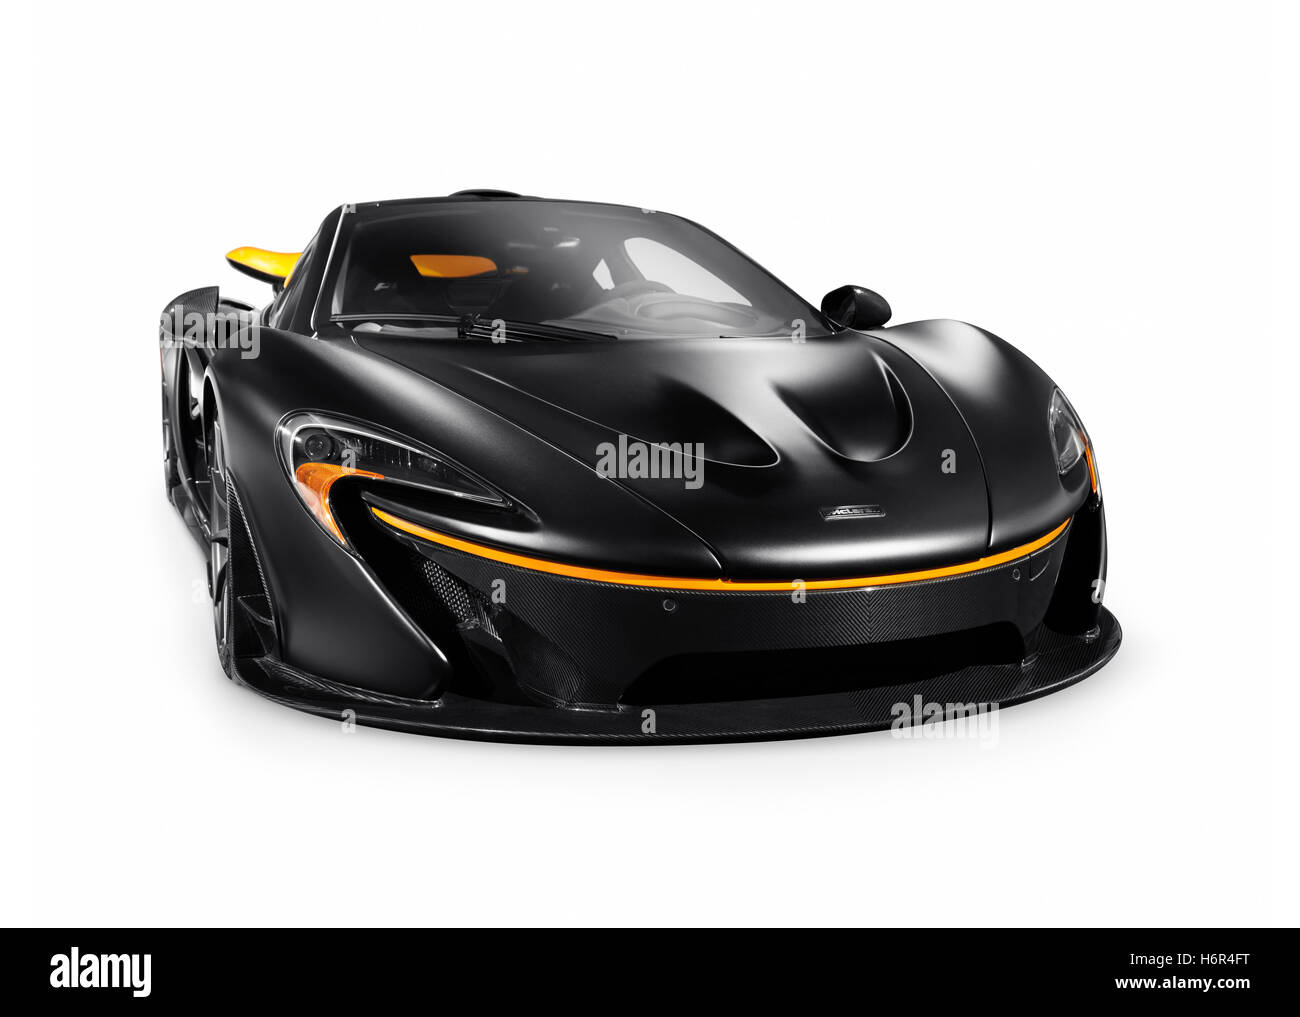 Licencia disponible en MaximImages.com - Negro mate 2015 McLaren P1 plug-in híbrido supercar aislado coche deportivo sobre fondo blanco con trazado de recorte Foto de stock